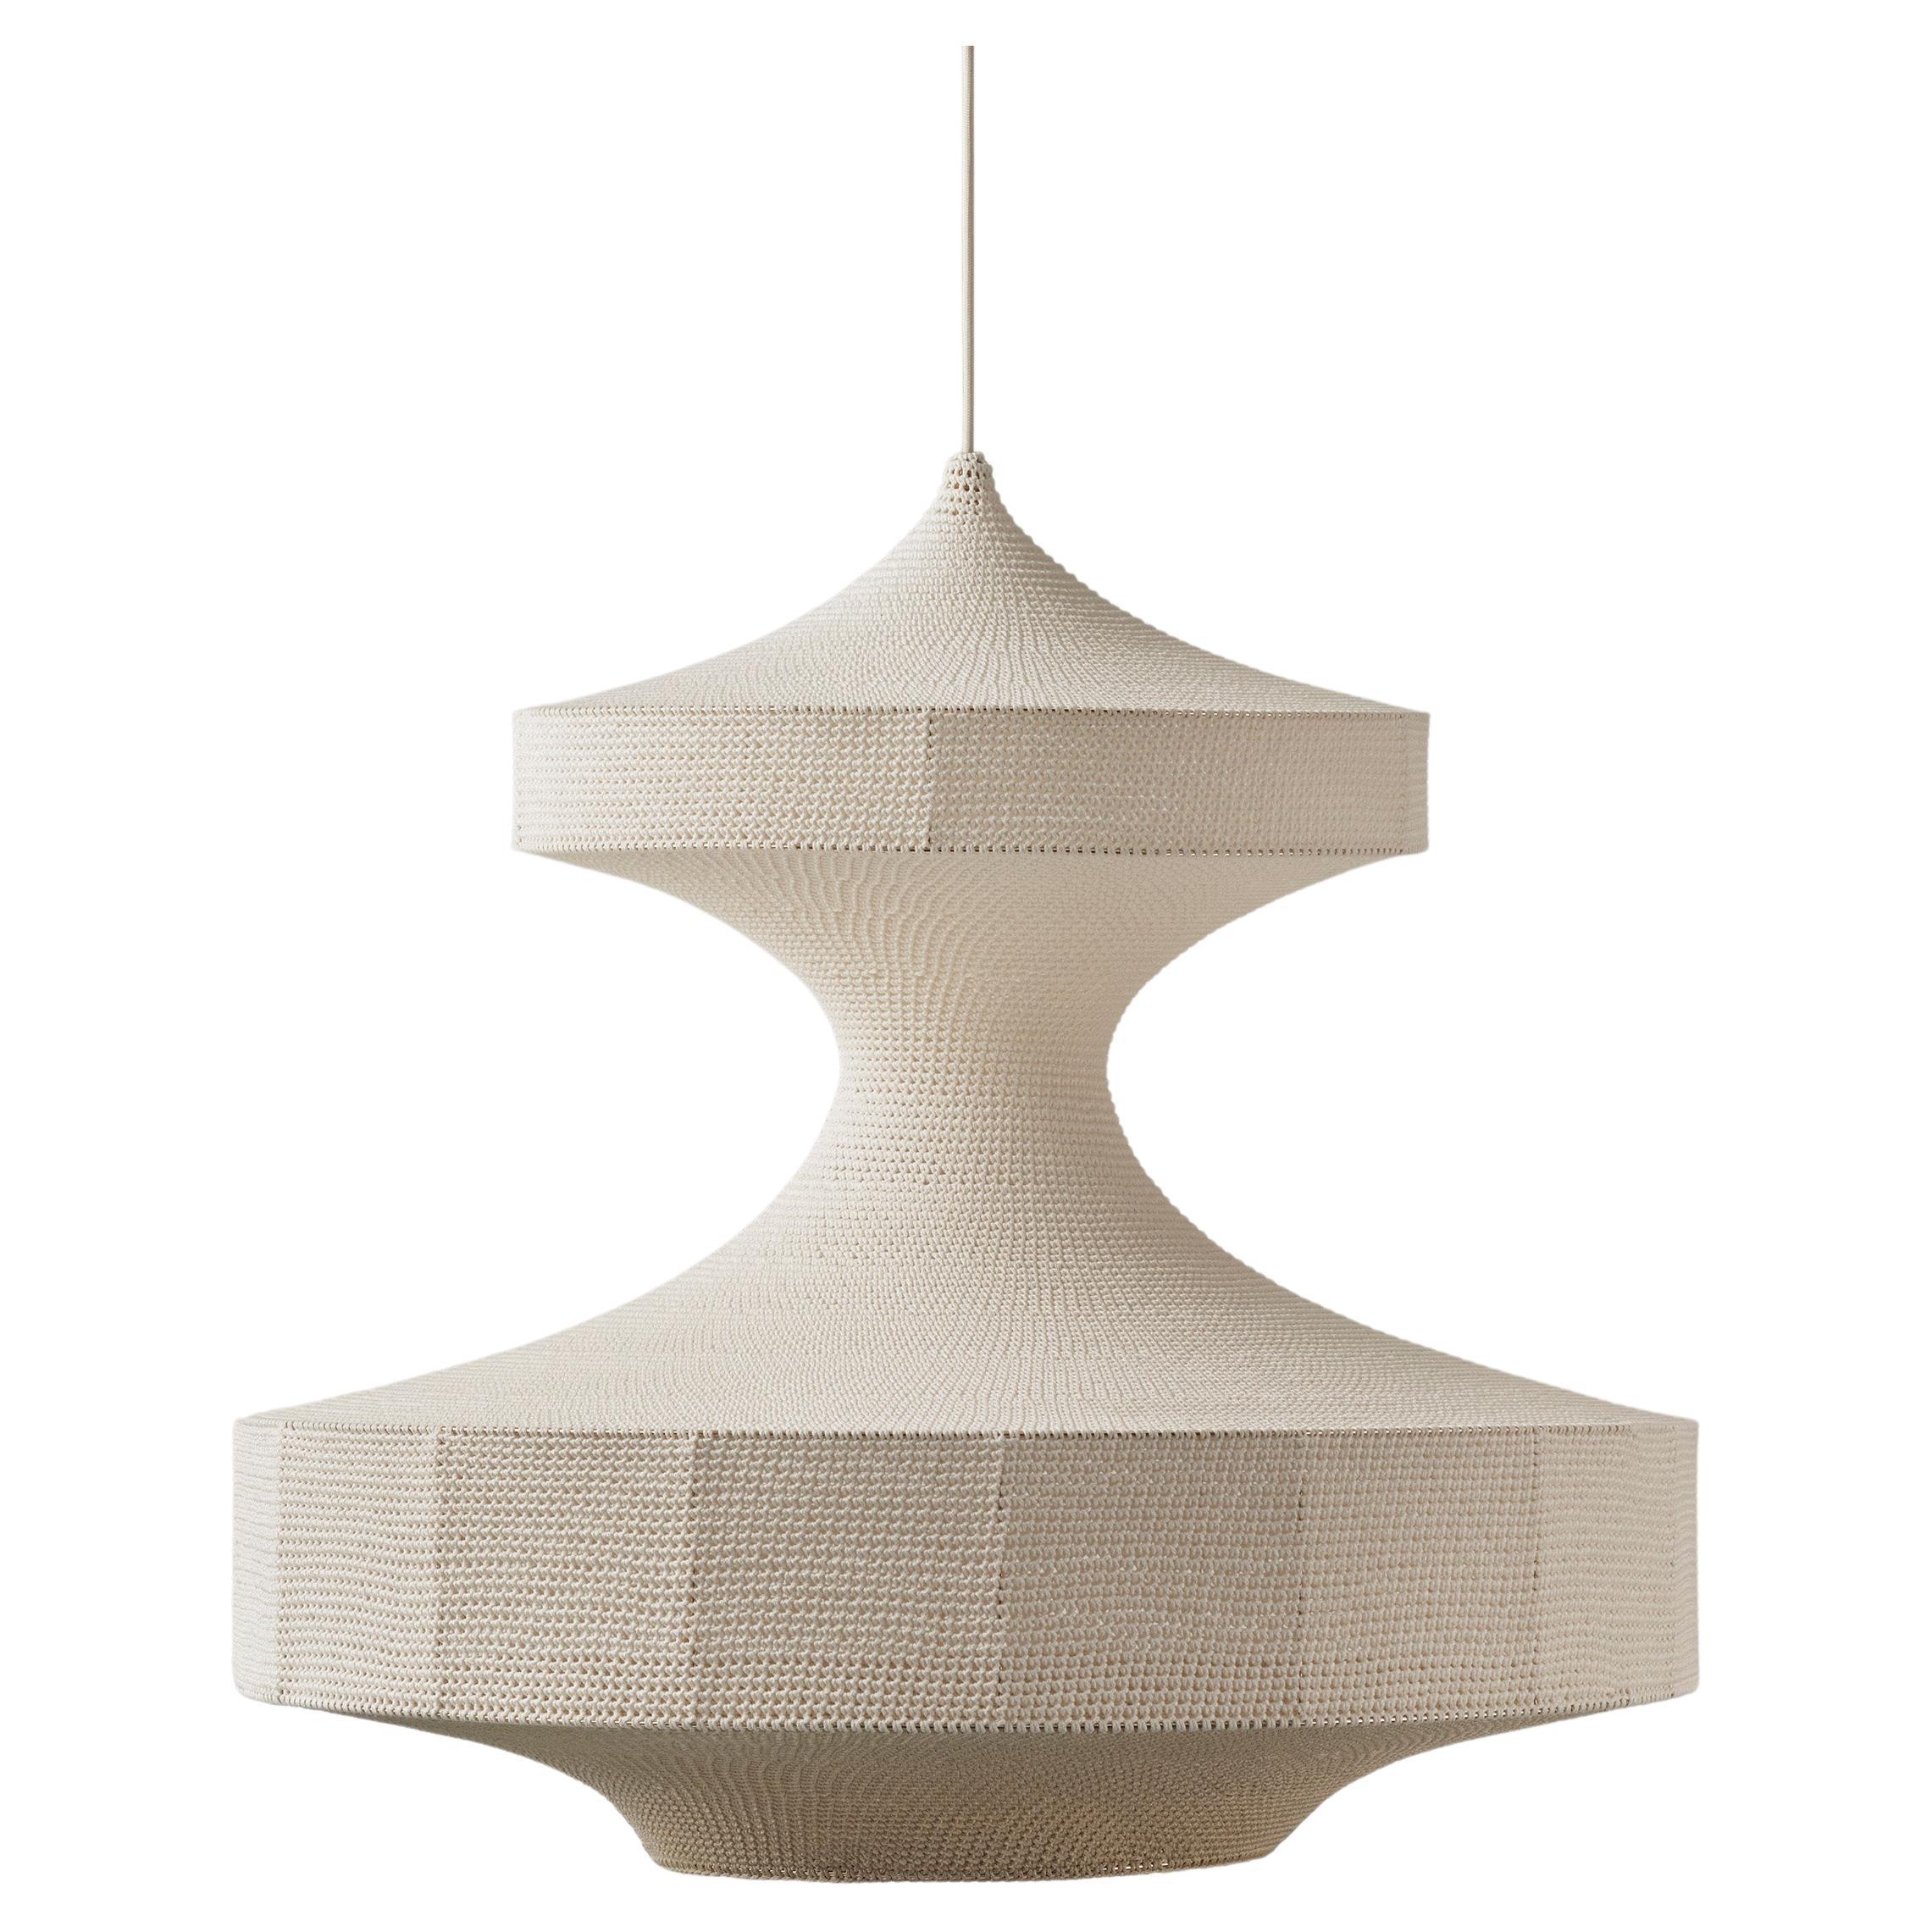 MONIKA Lampe pendante Ø80cm/31.5in, Crocheté à la main en 100% coton égyptien